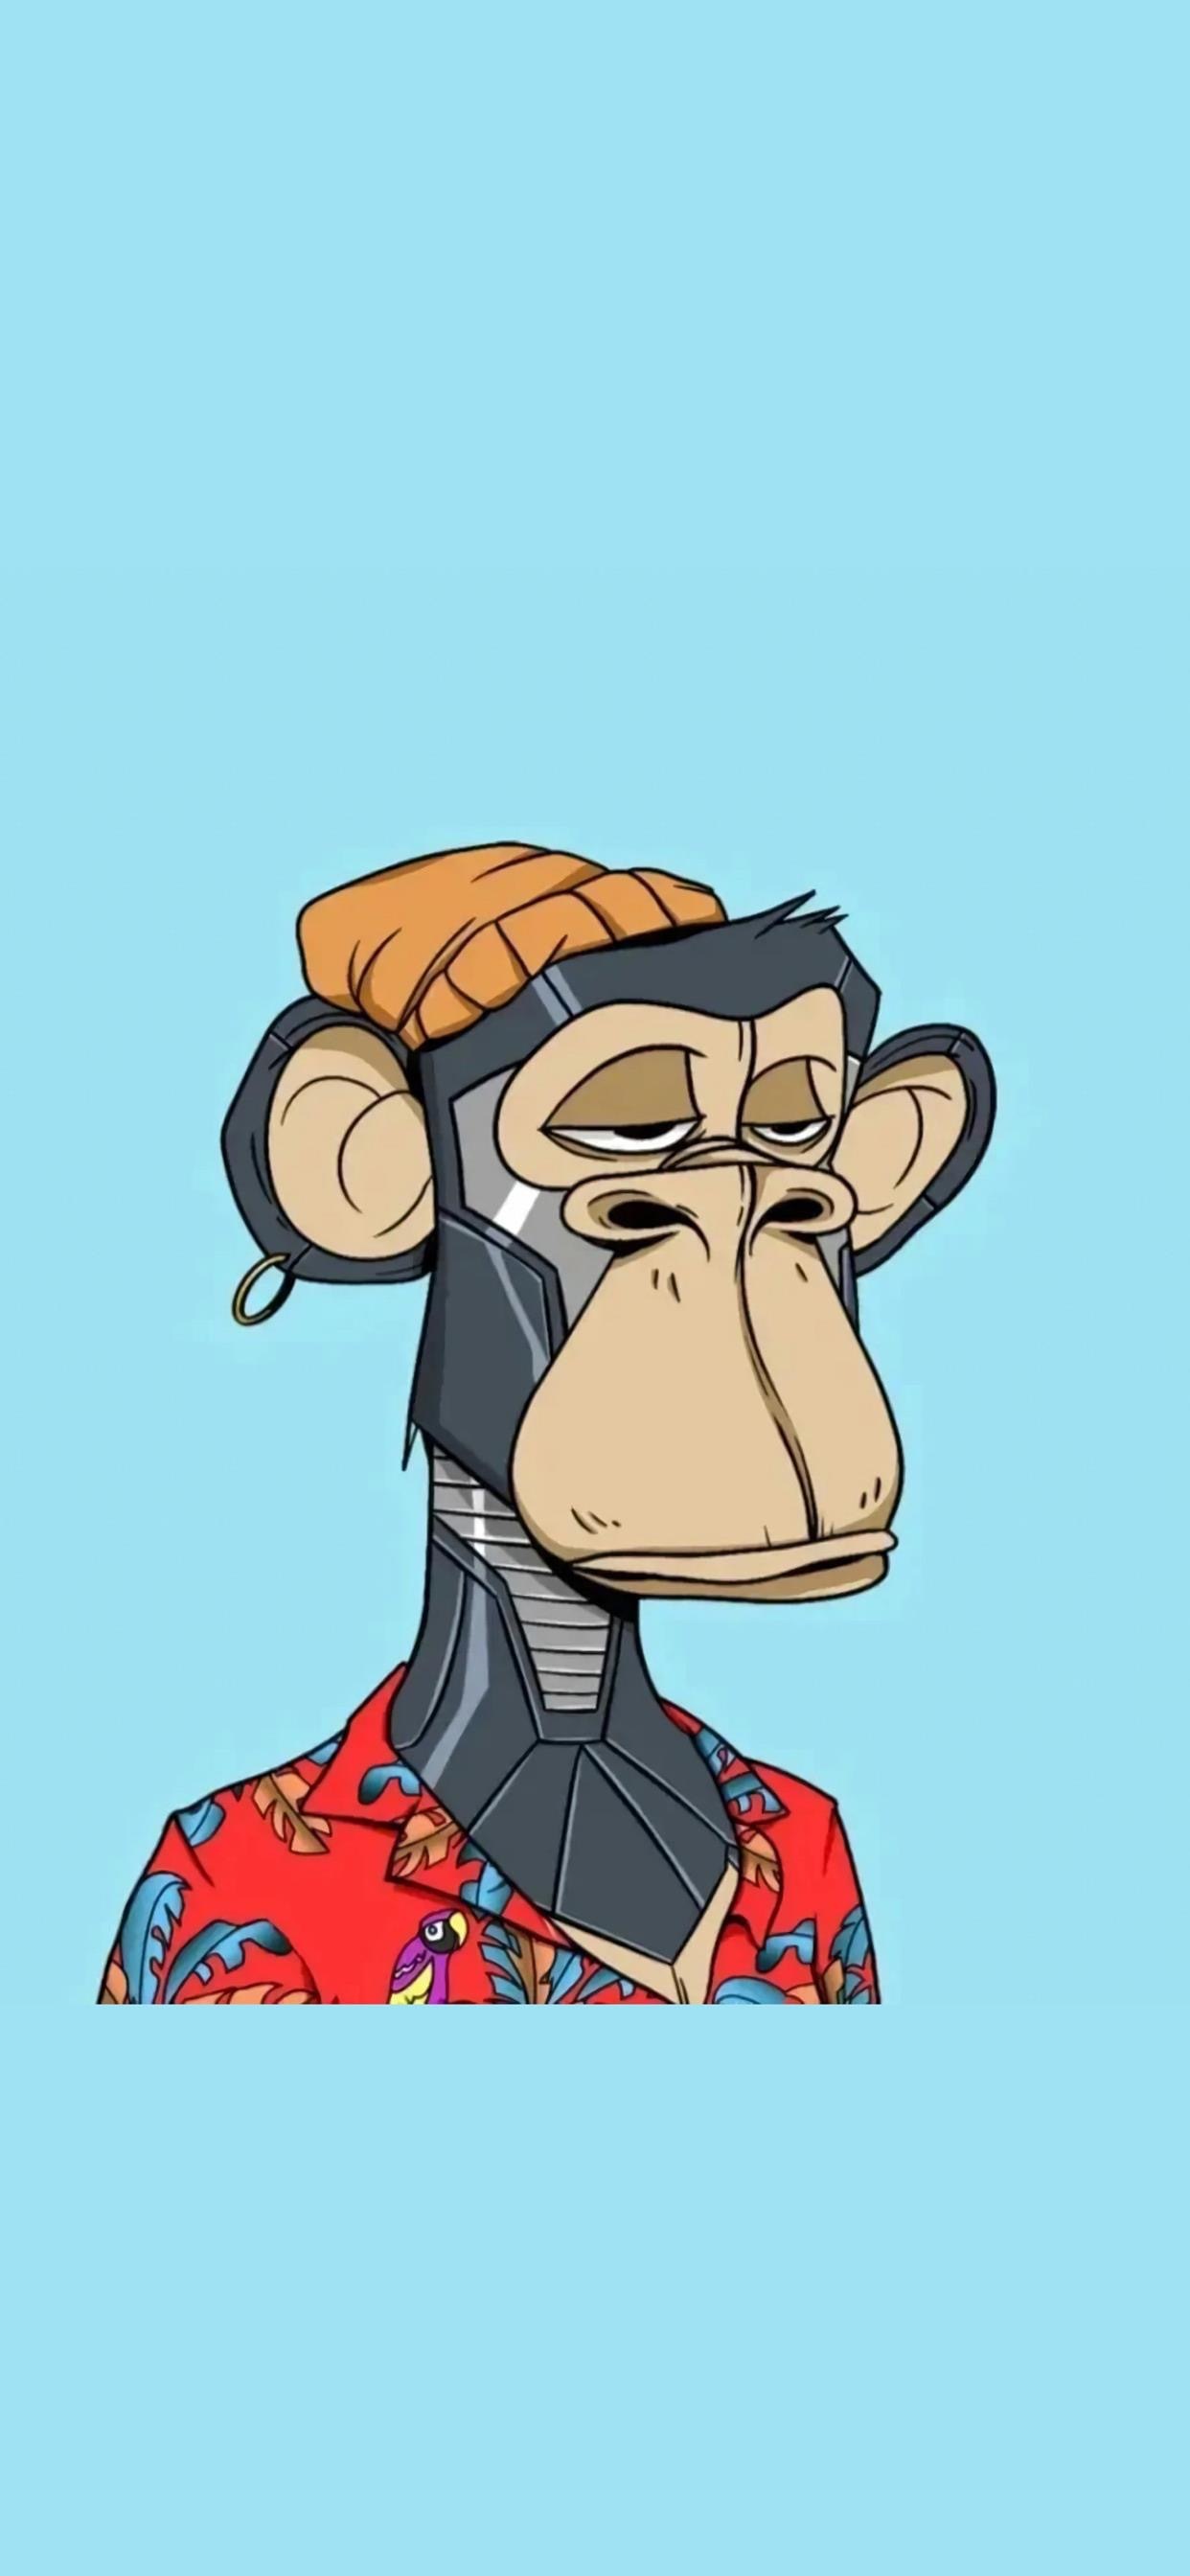 库里同款猴子头像手机壁纸